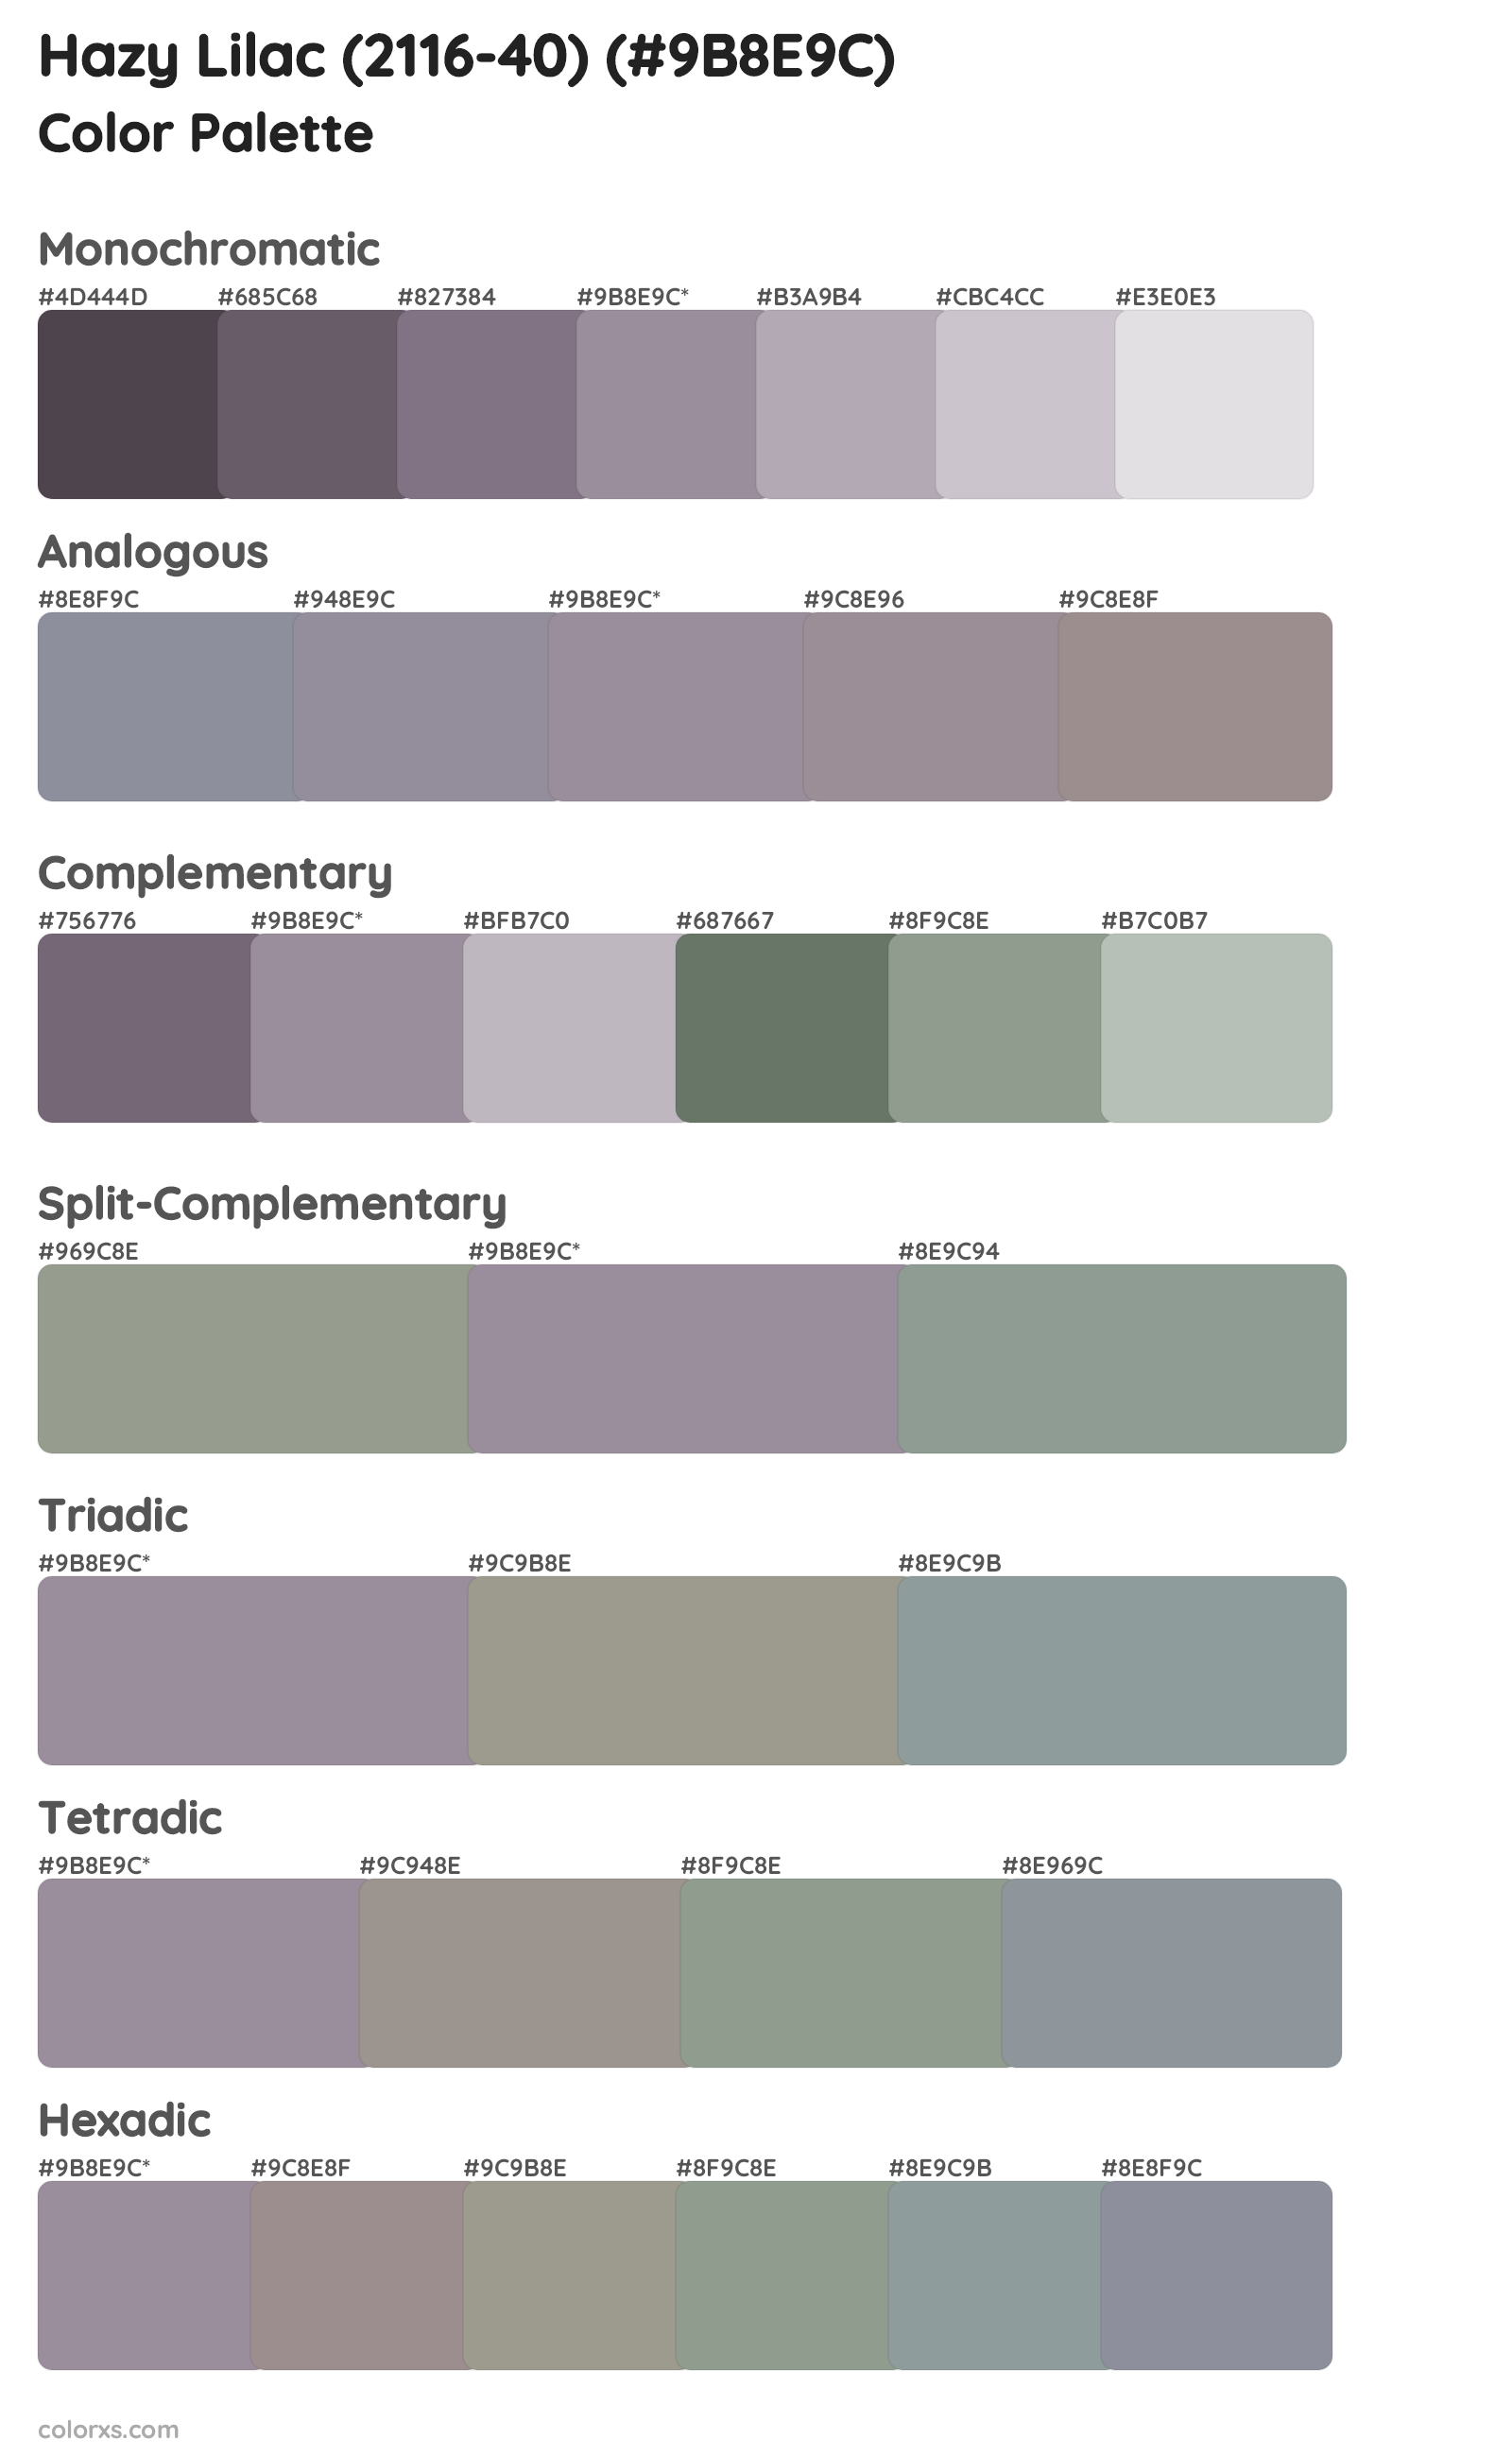 Hazy Lilac (2116-40) Color Scheme Palettes